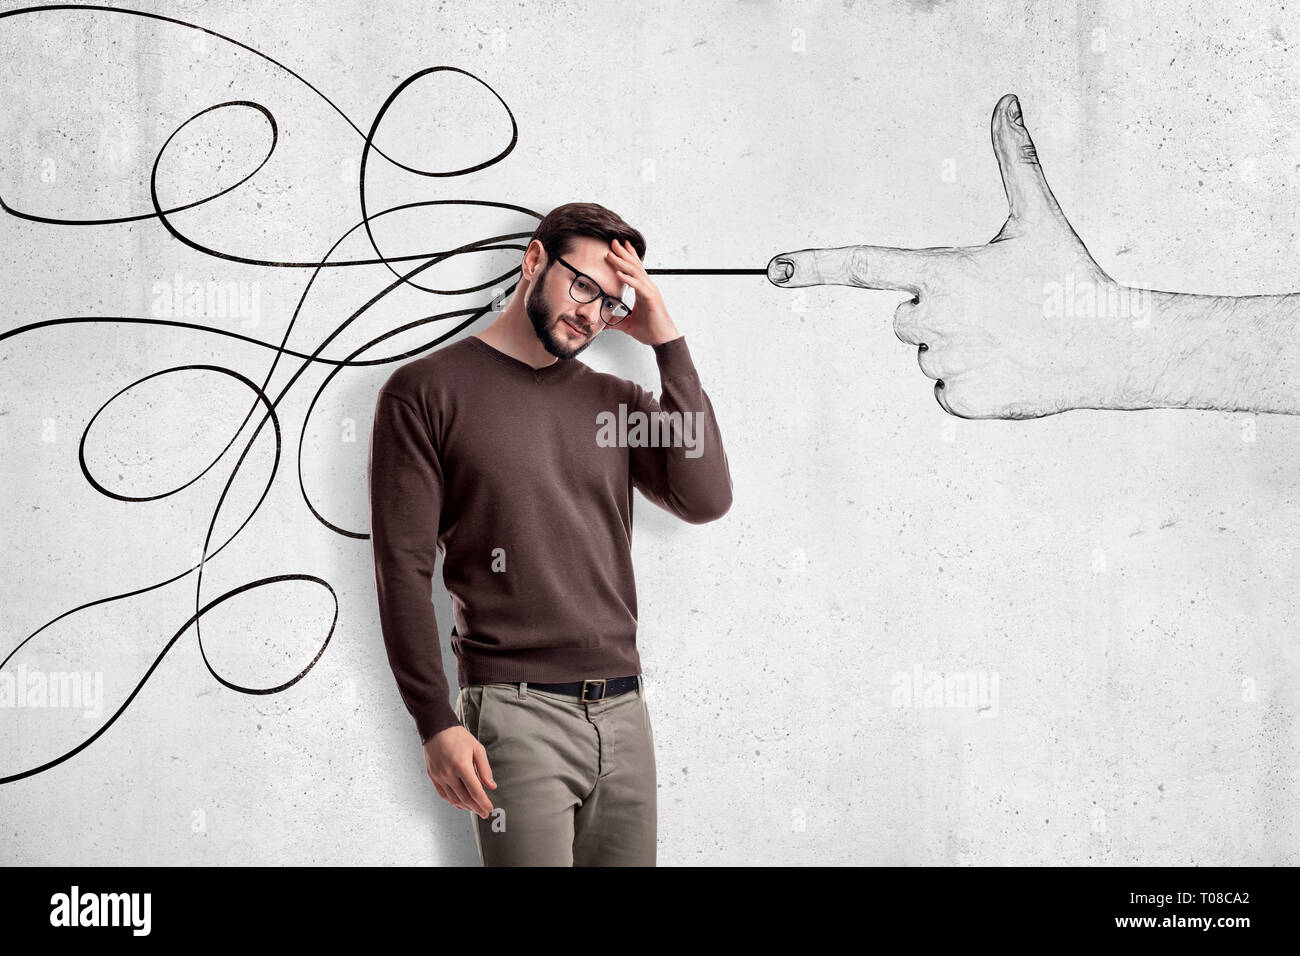 Denken junger Mann in Freizeitkleidung mit einer Hand schießen Geste und abstrakten Linien auf die weiße Wand Hintergrund Stockfoto